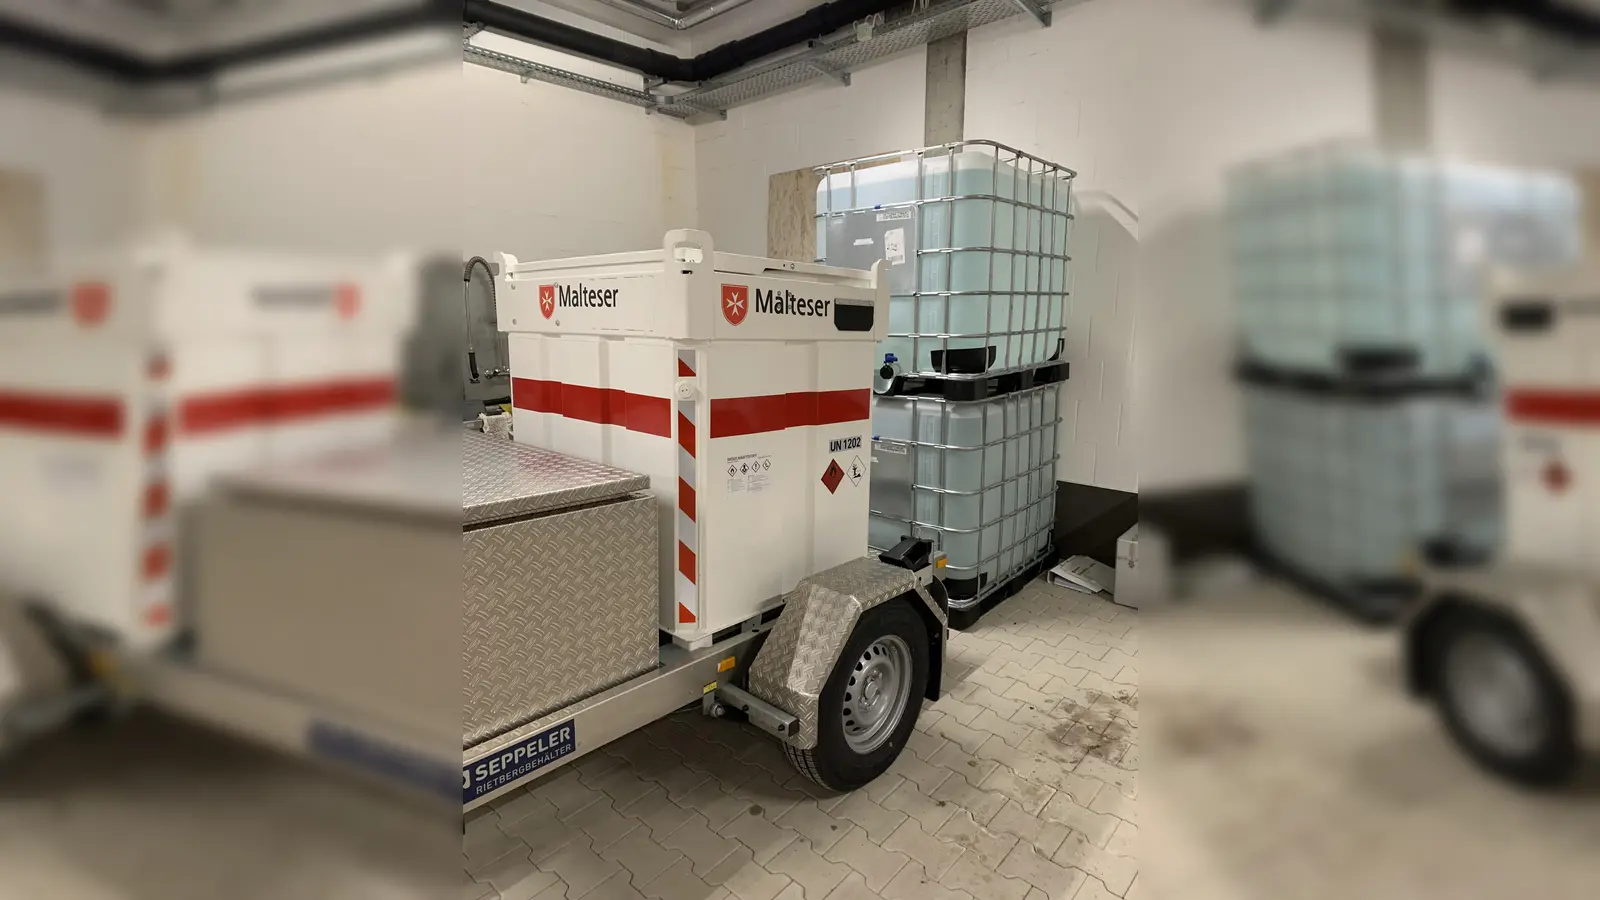 Die Malteser in Augsburg sind nun noch besser auf Notfälle vorbereitet mit einem mobilen Dieselvorrat im Tankanhänger. (Foto: Malteser Hilfsdienst)